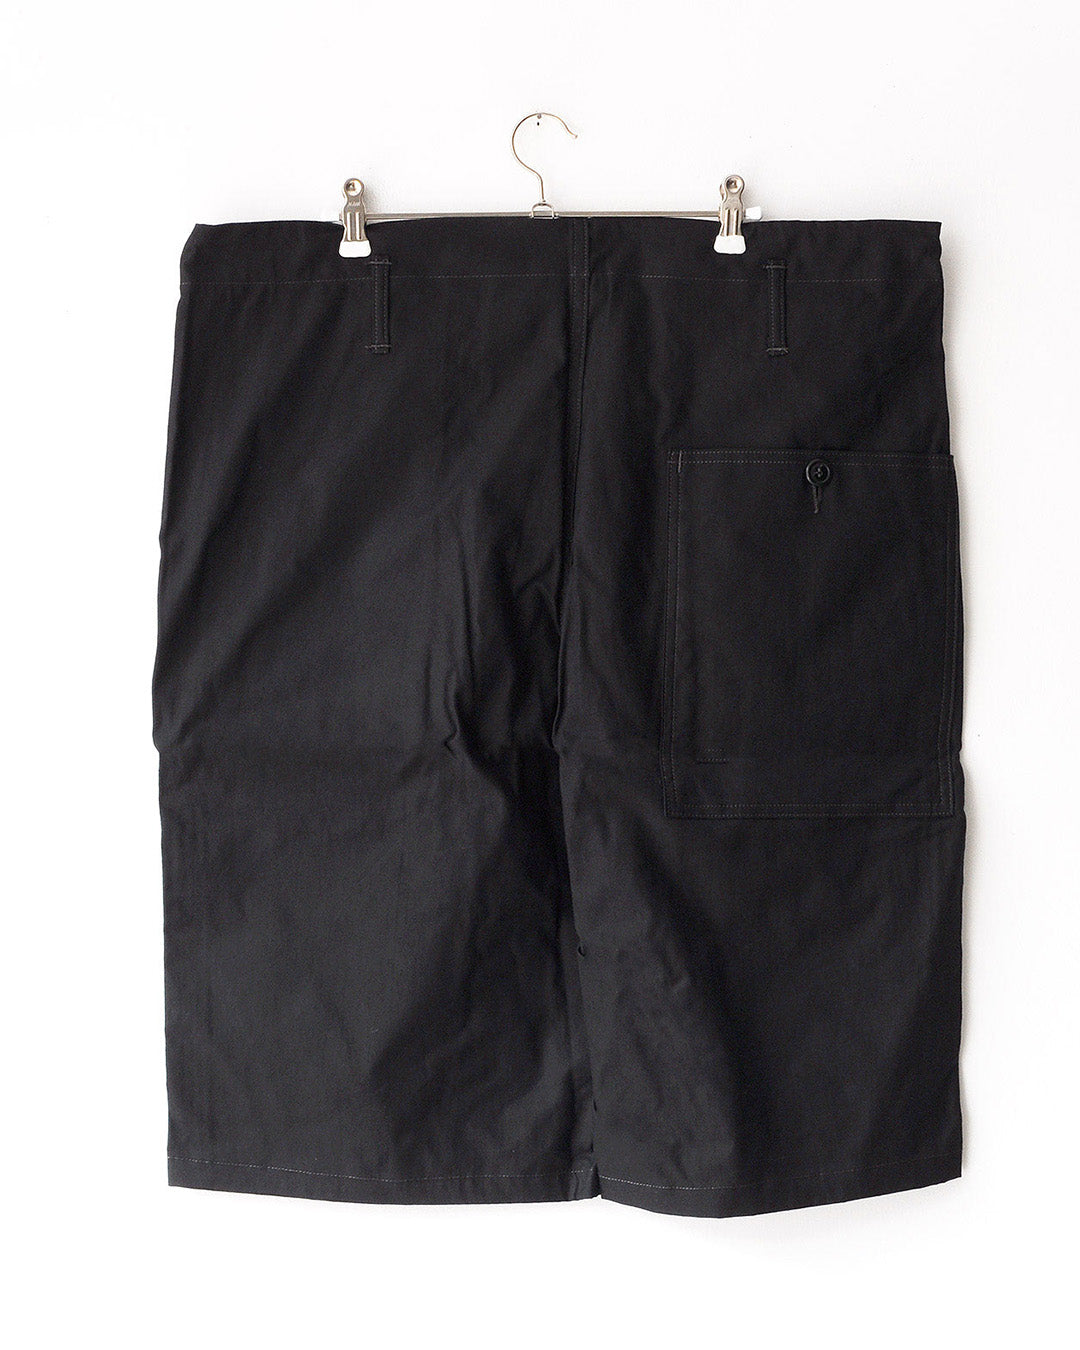 TUKI big shorts / black / double gabardine / size2,4